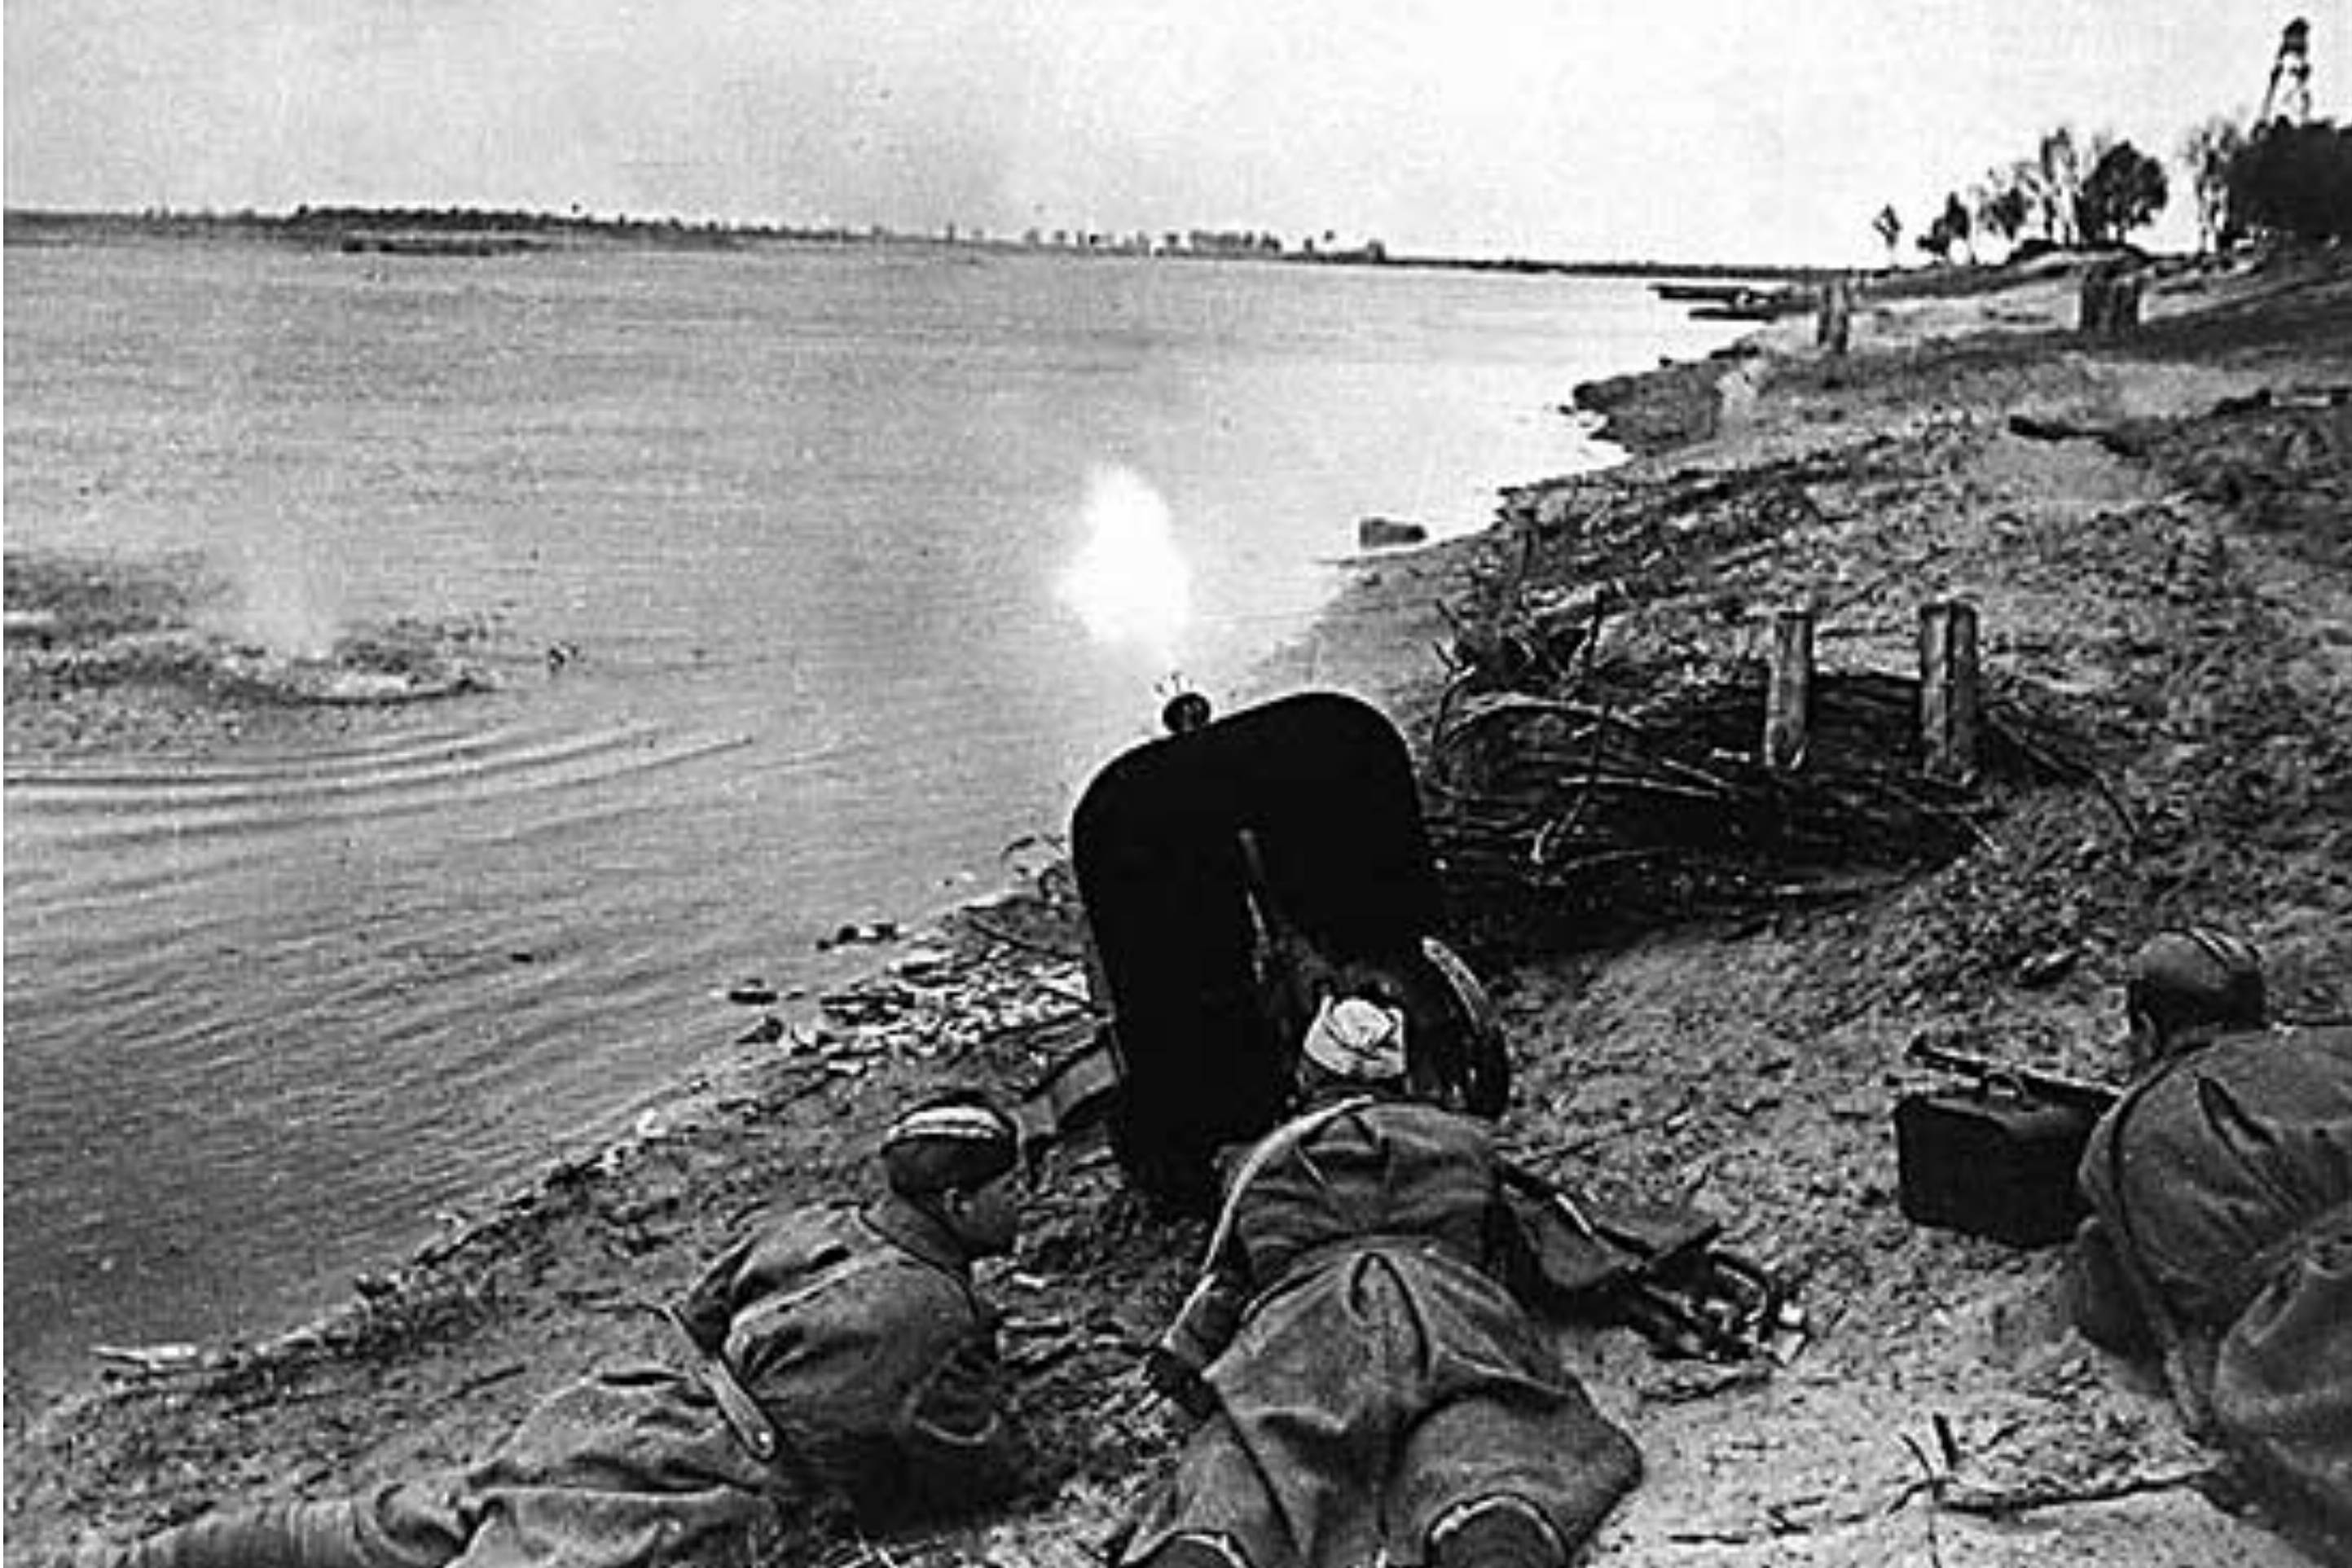 Форсирование Днепра. Расчет станкового пулемета ДШК поддерживает переправляющихся огнем. Ноябрь 1943 года (CC BY 4.0)